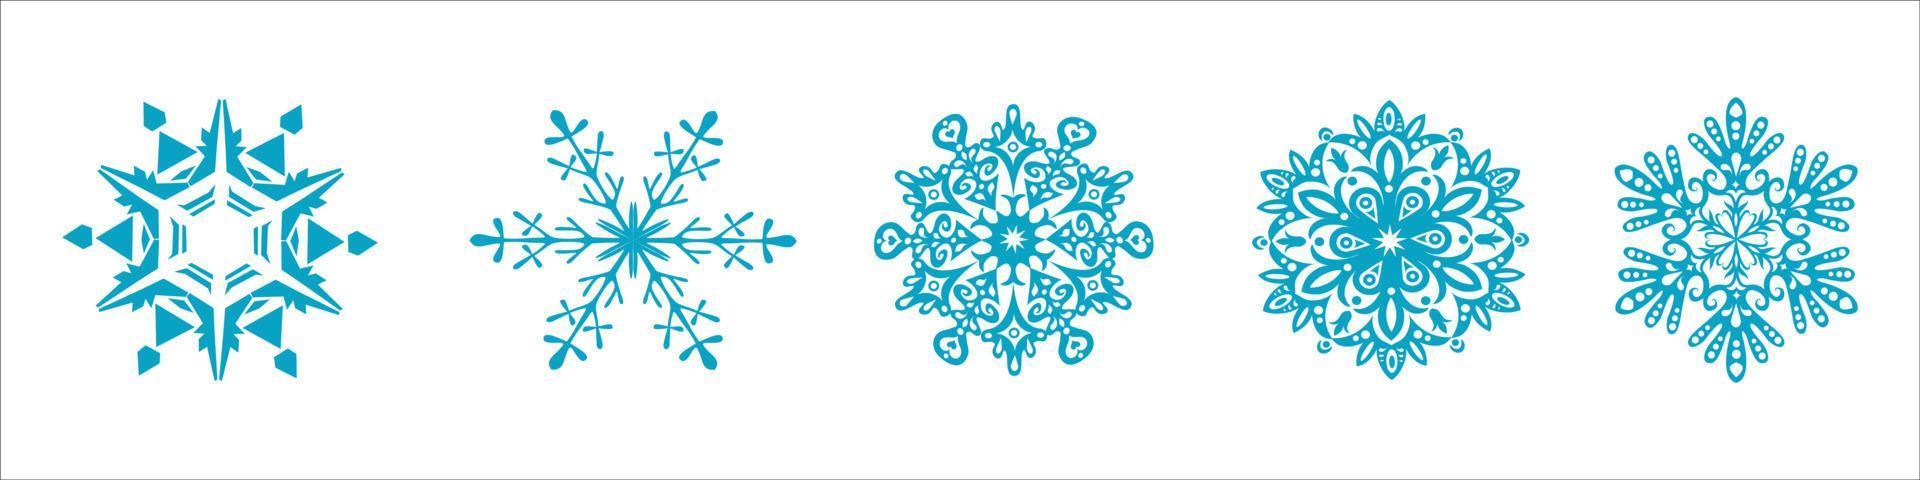 colección de iconos de copo de nieve azul aislado sobre fondo blanco. vector